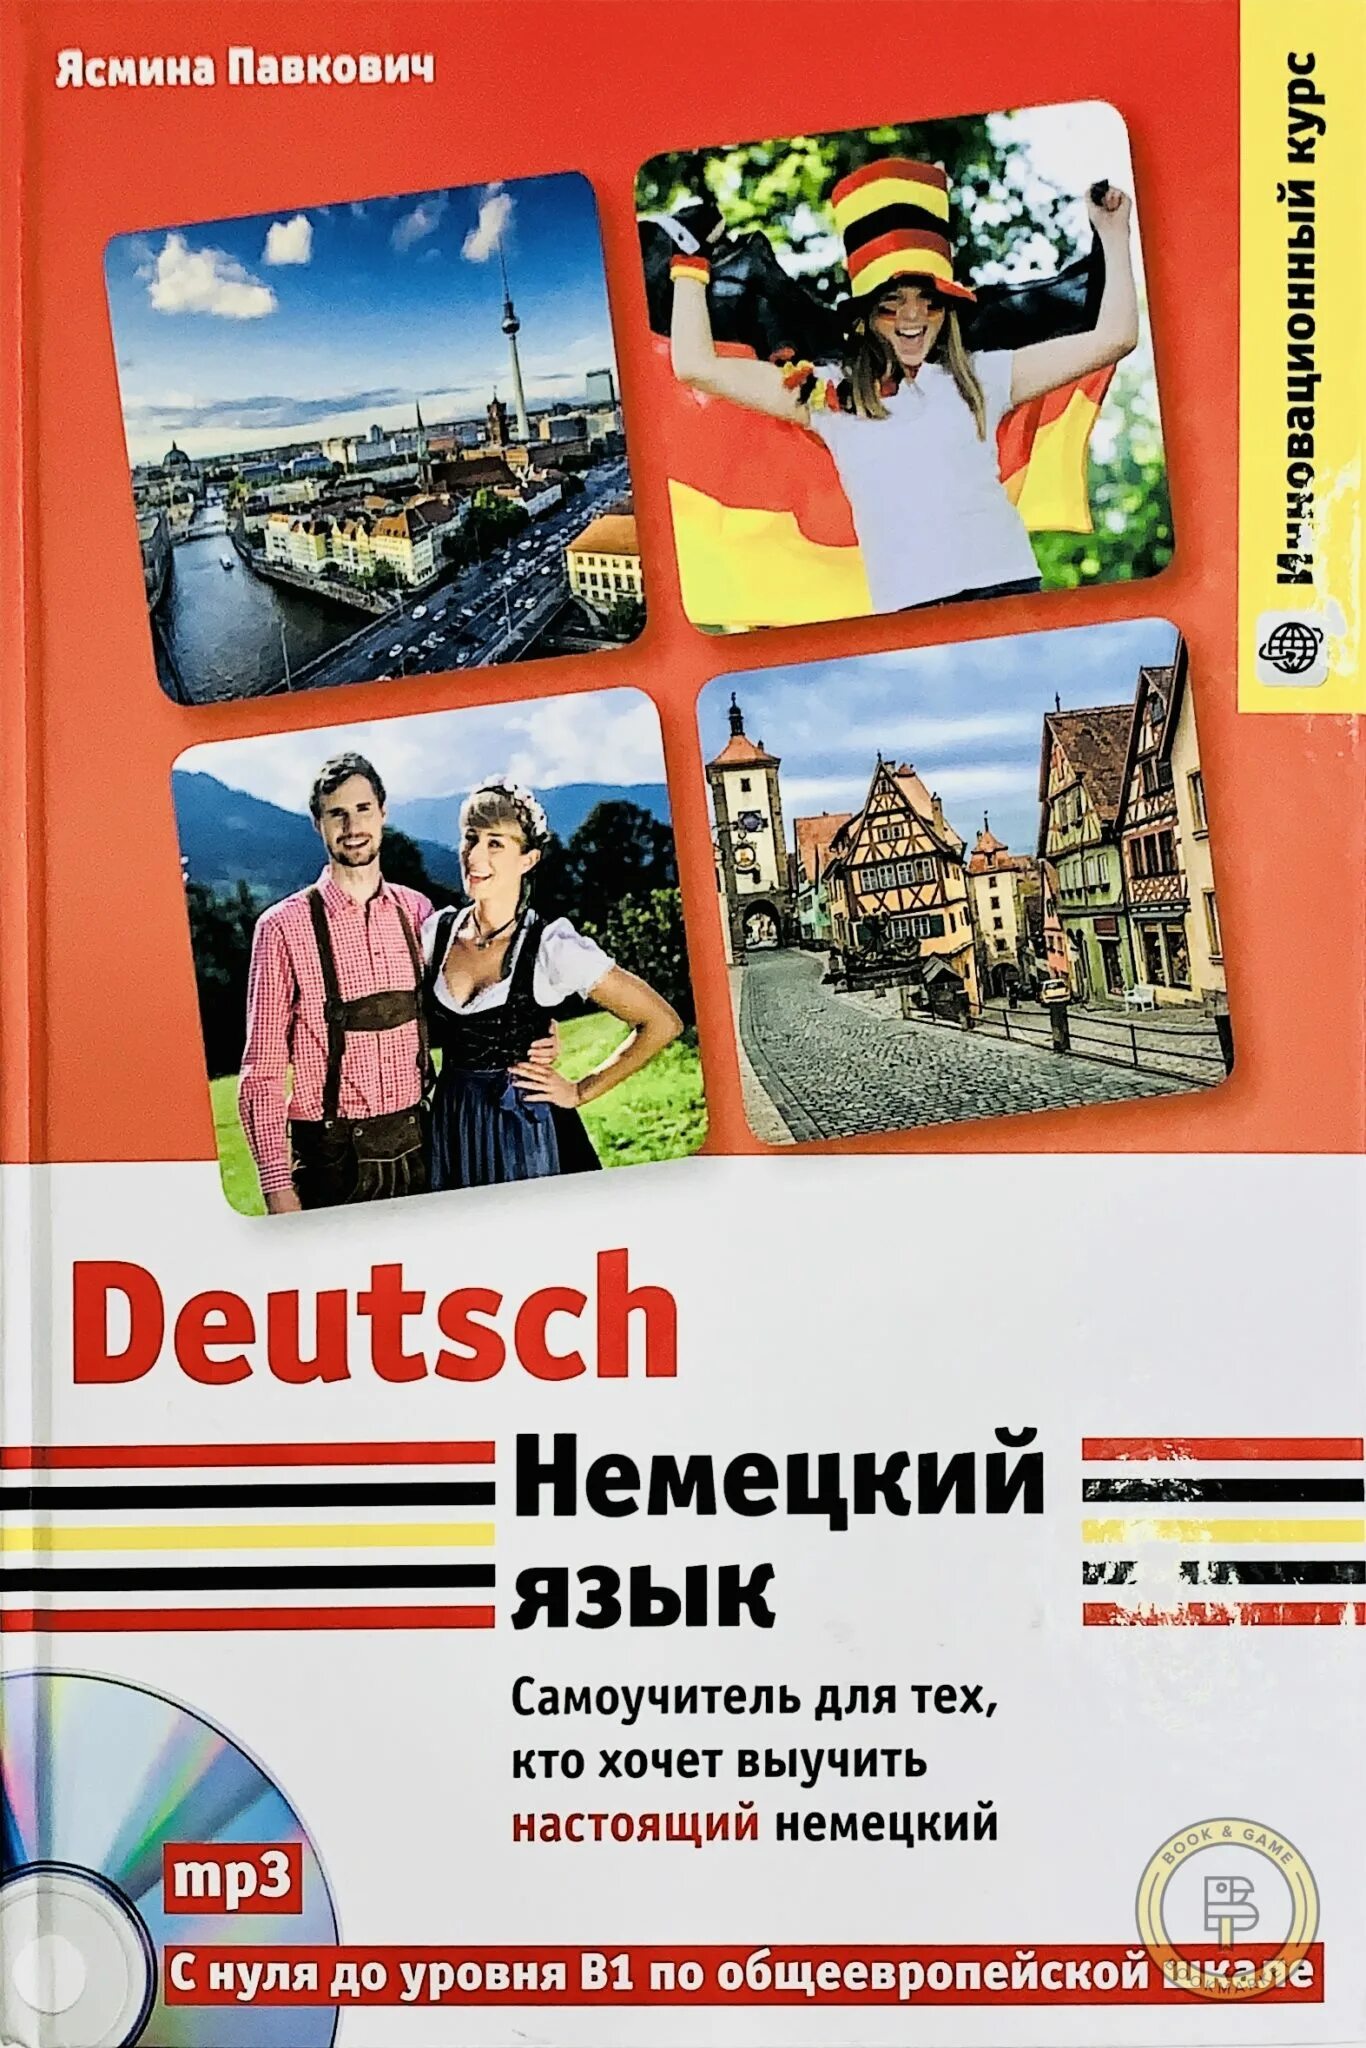 Немецкий язык ру. Немецкий язык. Изучение немецкого языка. Немецки. Изучаем немецкий язык.